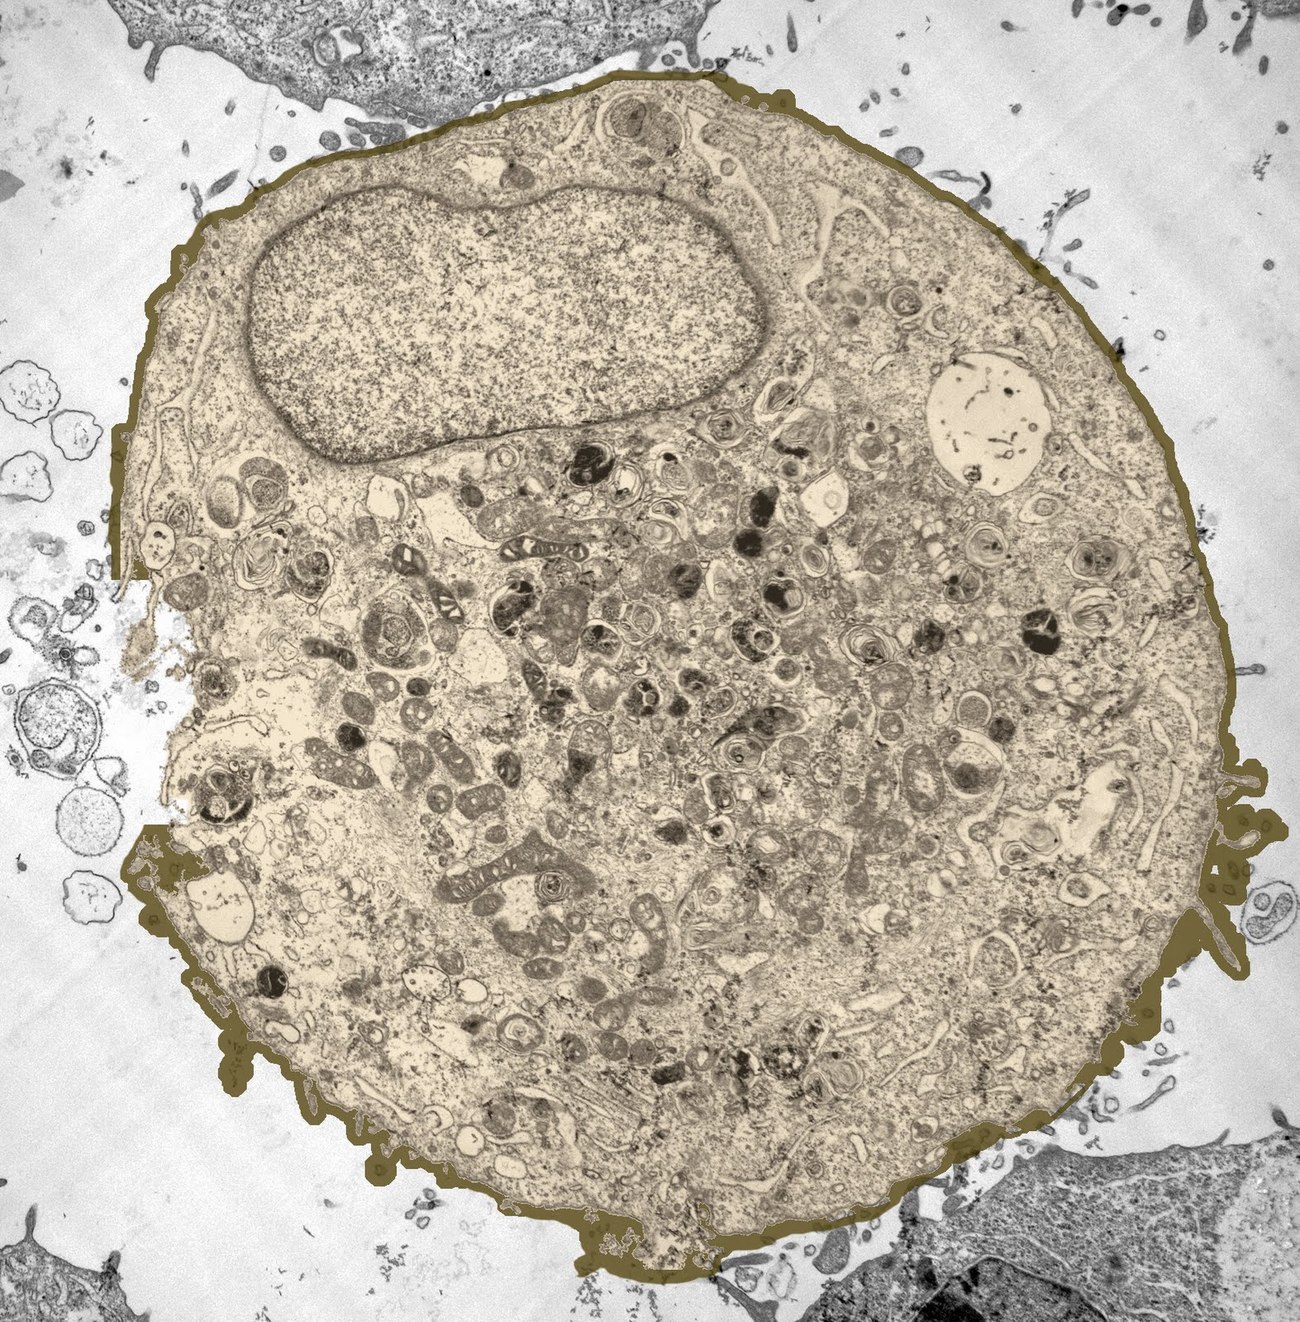 ეუკარიოტული უჯრედის განივკვეთი. ფოტოზე შეგიძლიათ დაინახოთ ბირთვი, მიტოქონდრიები და სხვა ორგანელები